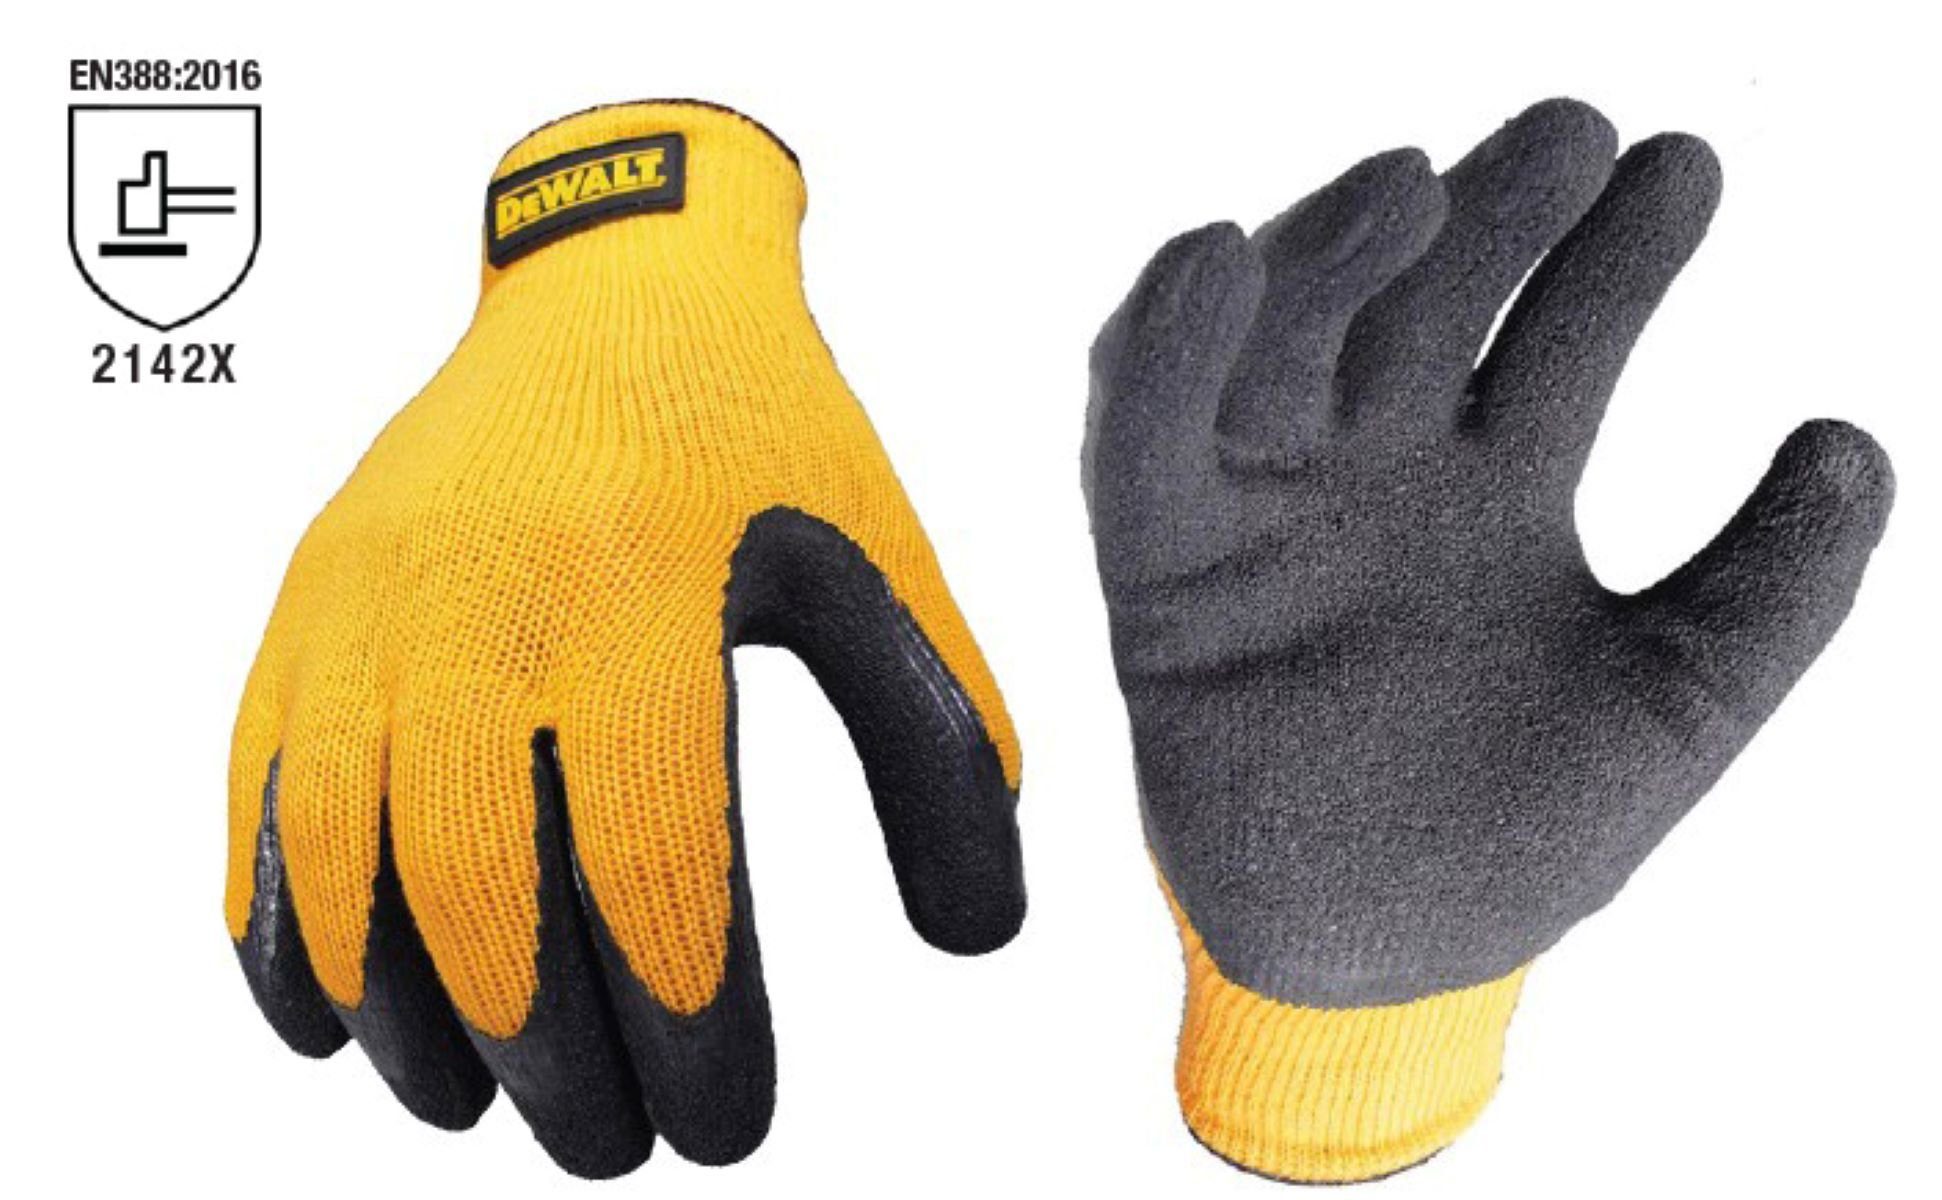 DeWalt Montage-Handschuhe DPG70LEU Arbeitshandschuh strukturierte Latex-Beschichtung L (Nr. 10) Schutzhandschuhe, Arbeitshandschuh, Gartenhandschuh, Arbeitsschutz